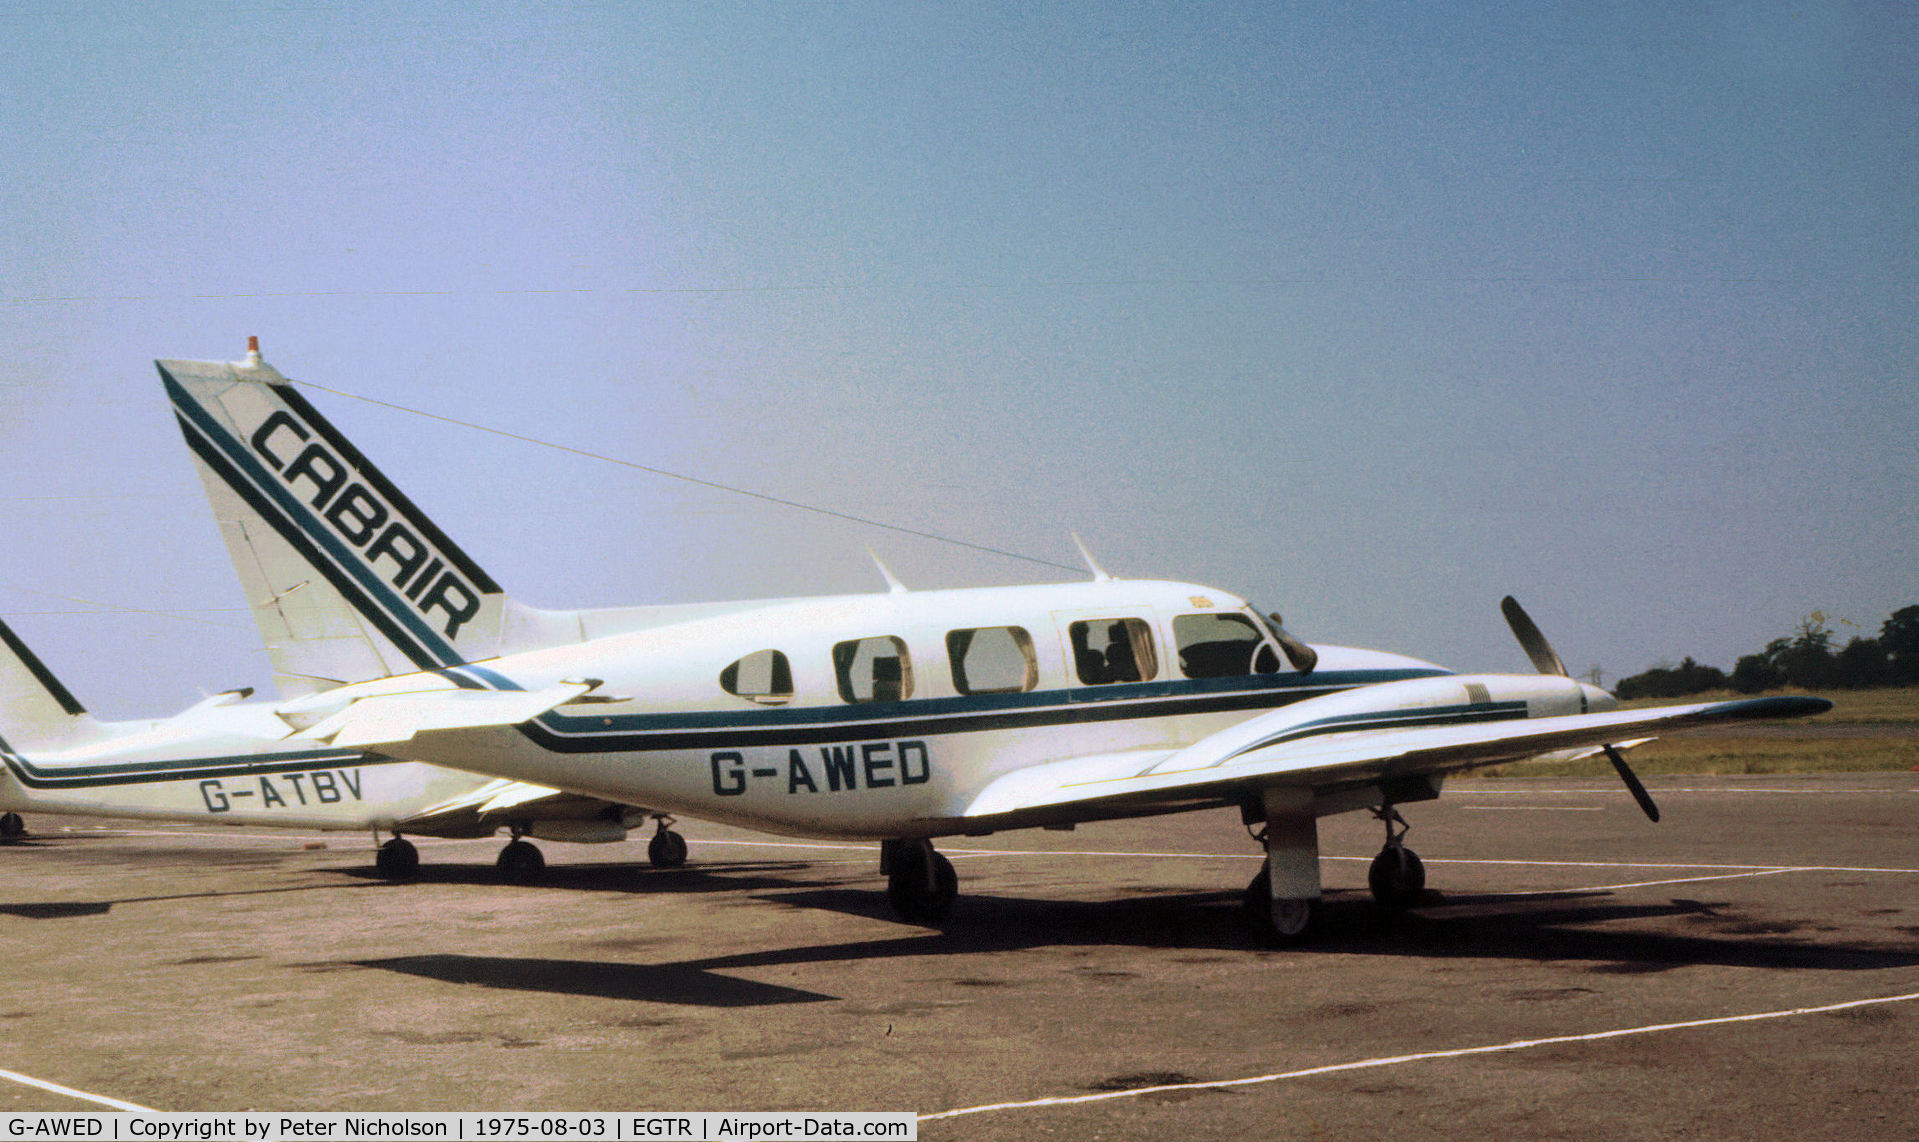 G-AWED, 1967 Piper PA-31 Navajo C/N 31-109, PA-31 Navajo of Air Taxi Operator Cabair at Elstree in the Summer of 1975.